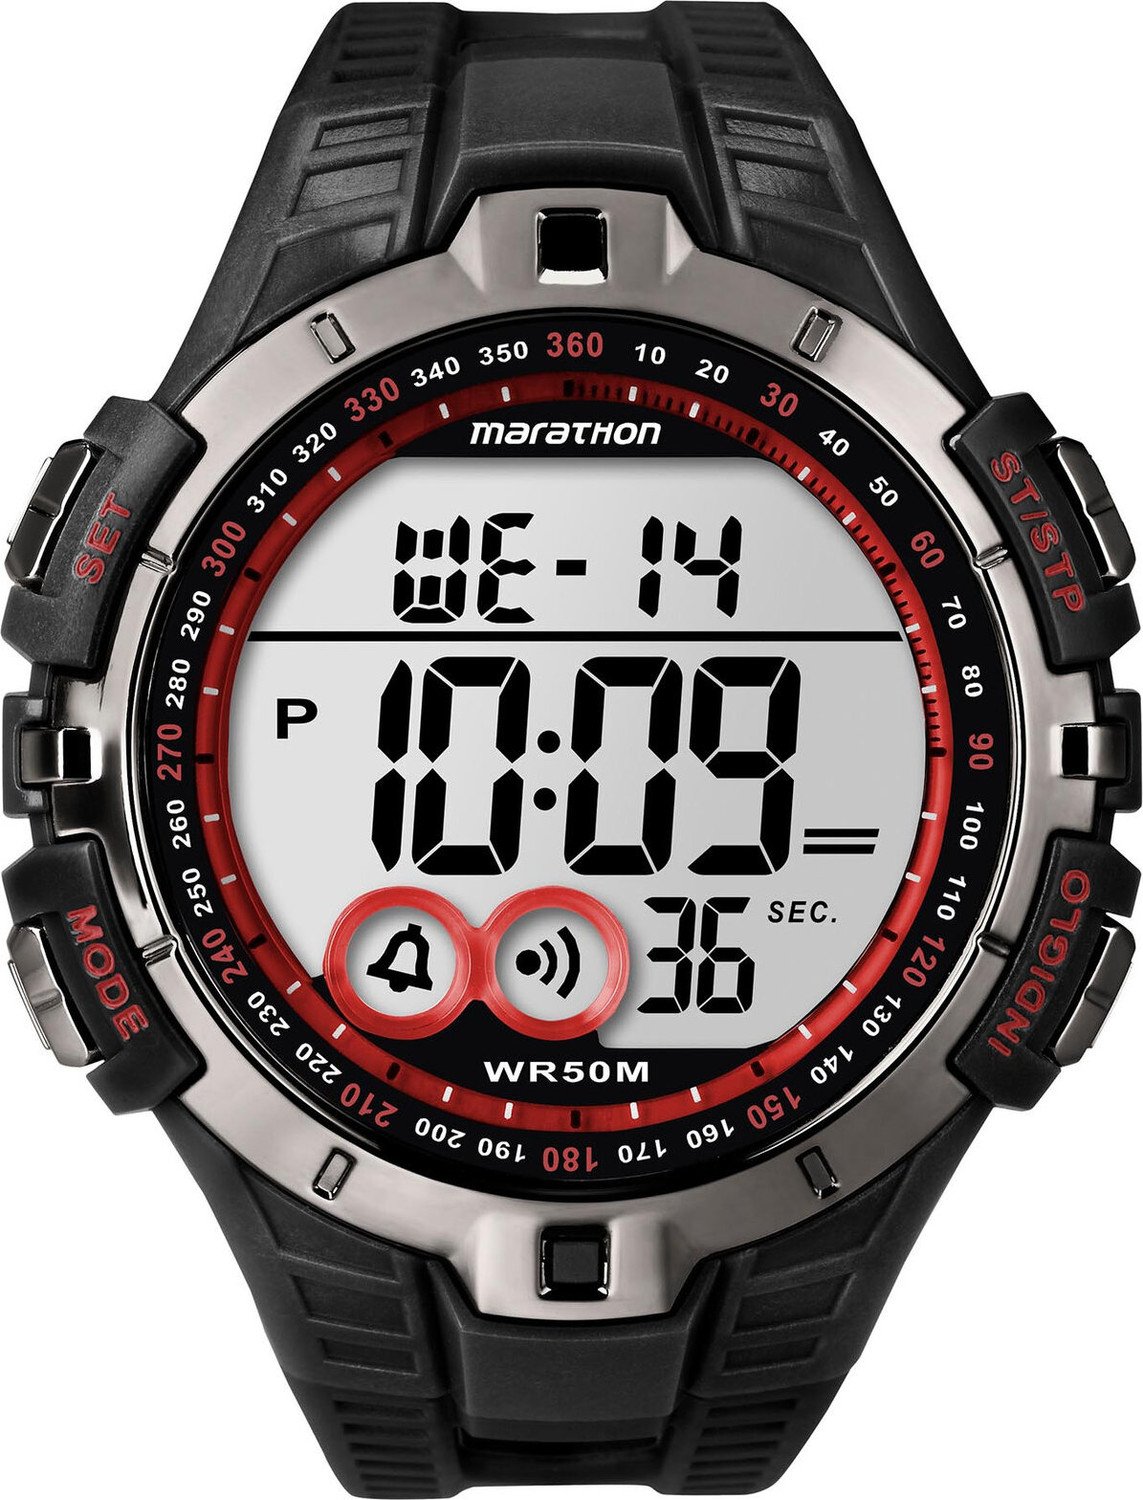 Hodinky Timex Marathon T5K423 Black/Grey